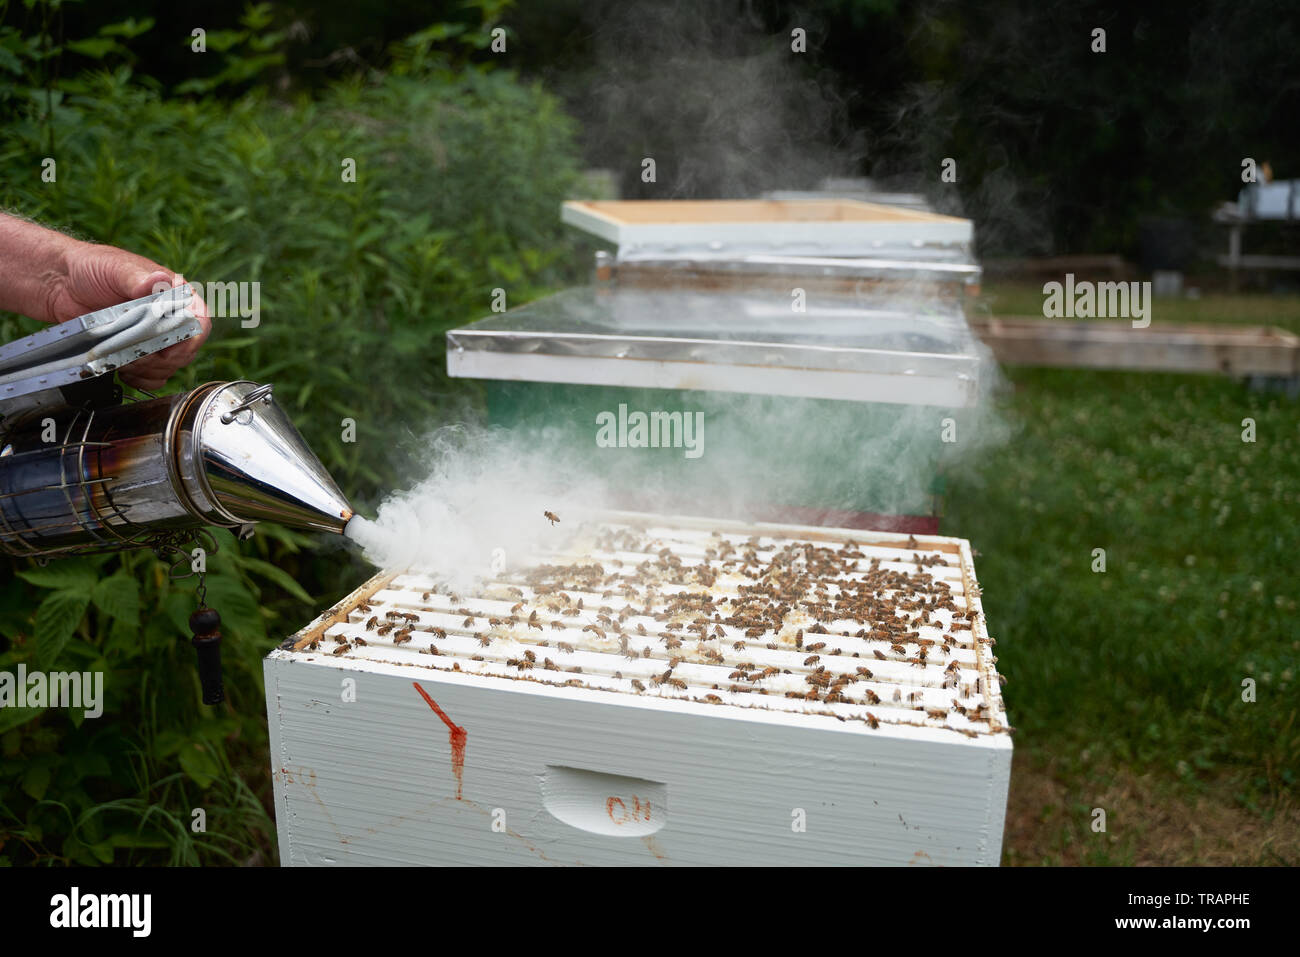 Ein Imker raucht das Hive die Honigbienen vor dem Testen der Gesundheit der Kolonie zu beruhigen. Urban beeking hat viel populärer geworden in den letzten Jahren. Stockfoto